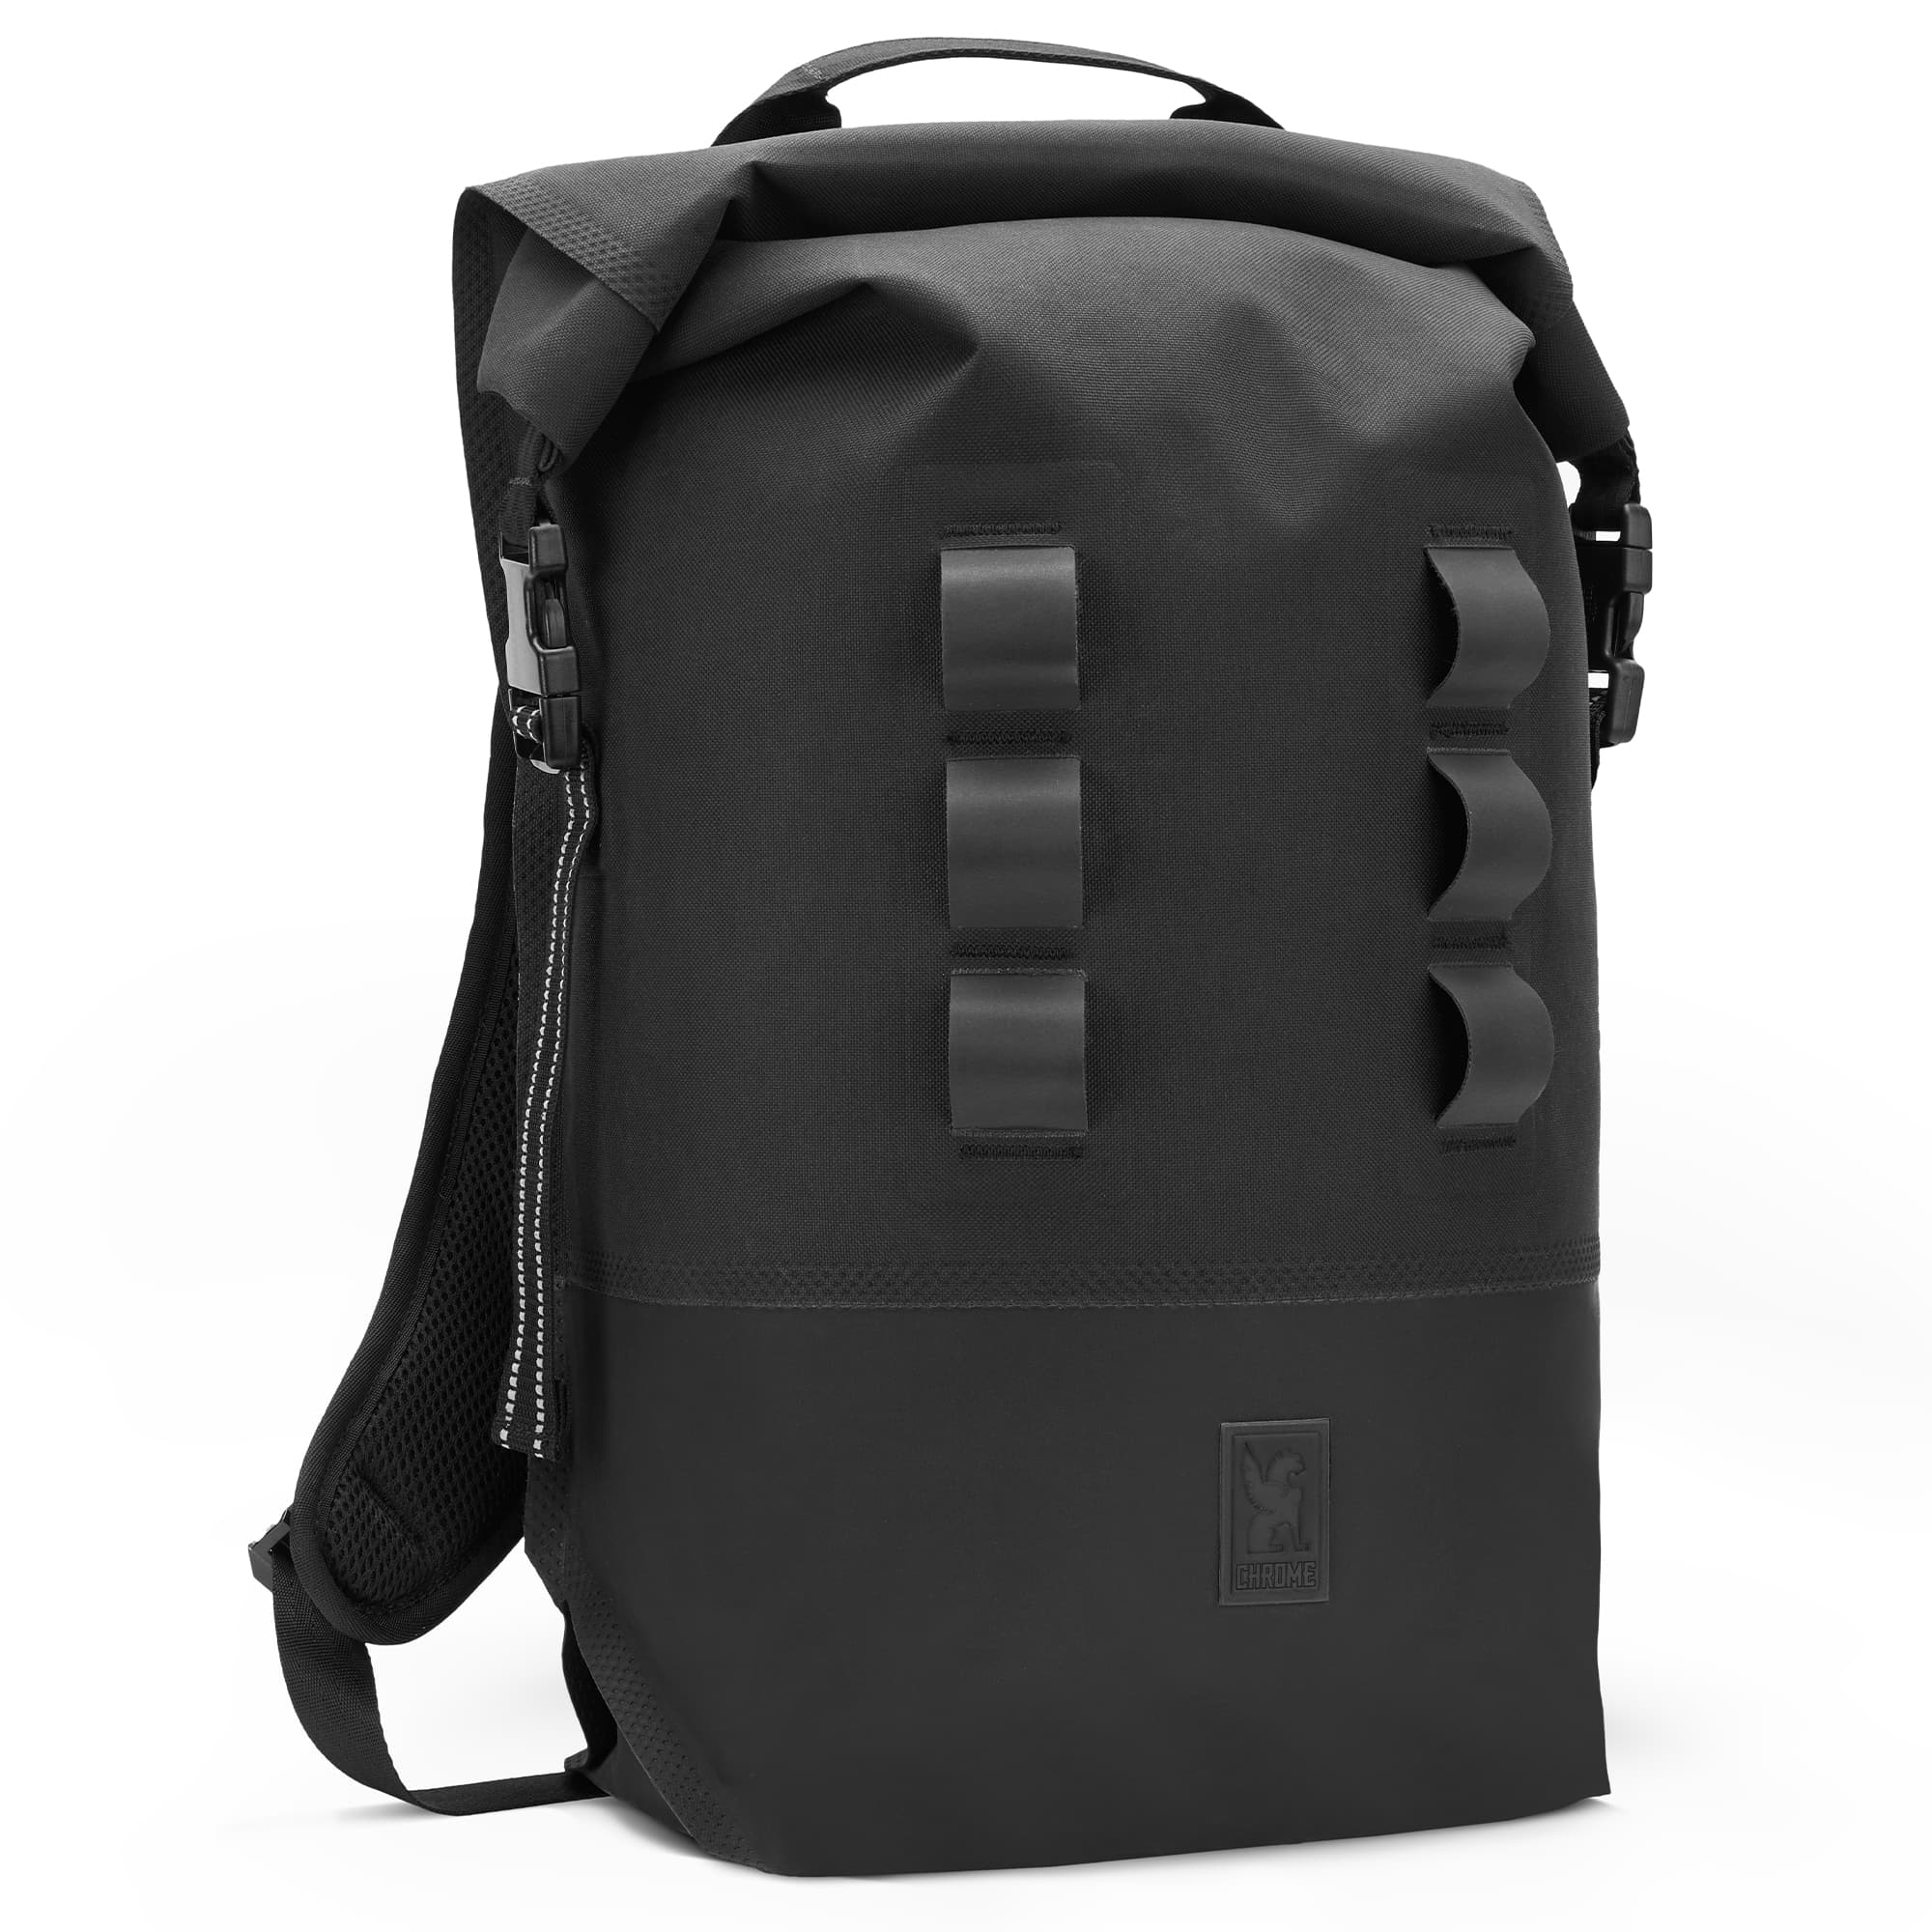 Waterproof 20L backpack in black #color_black